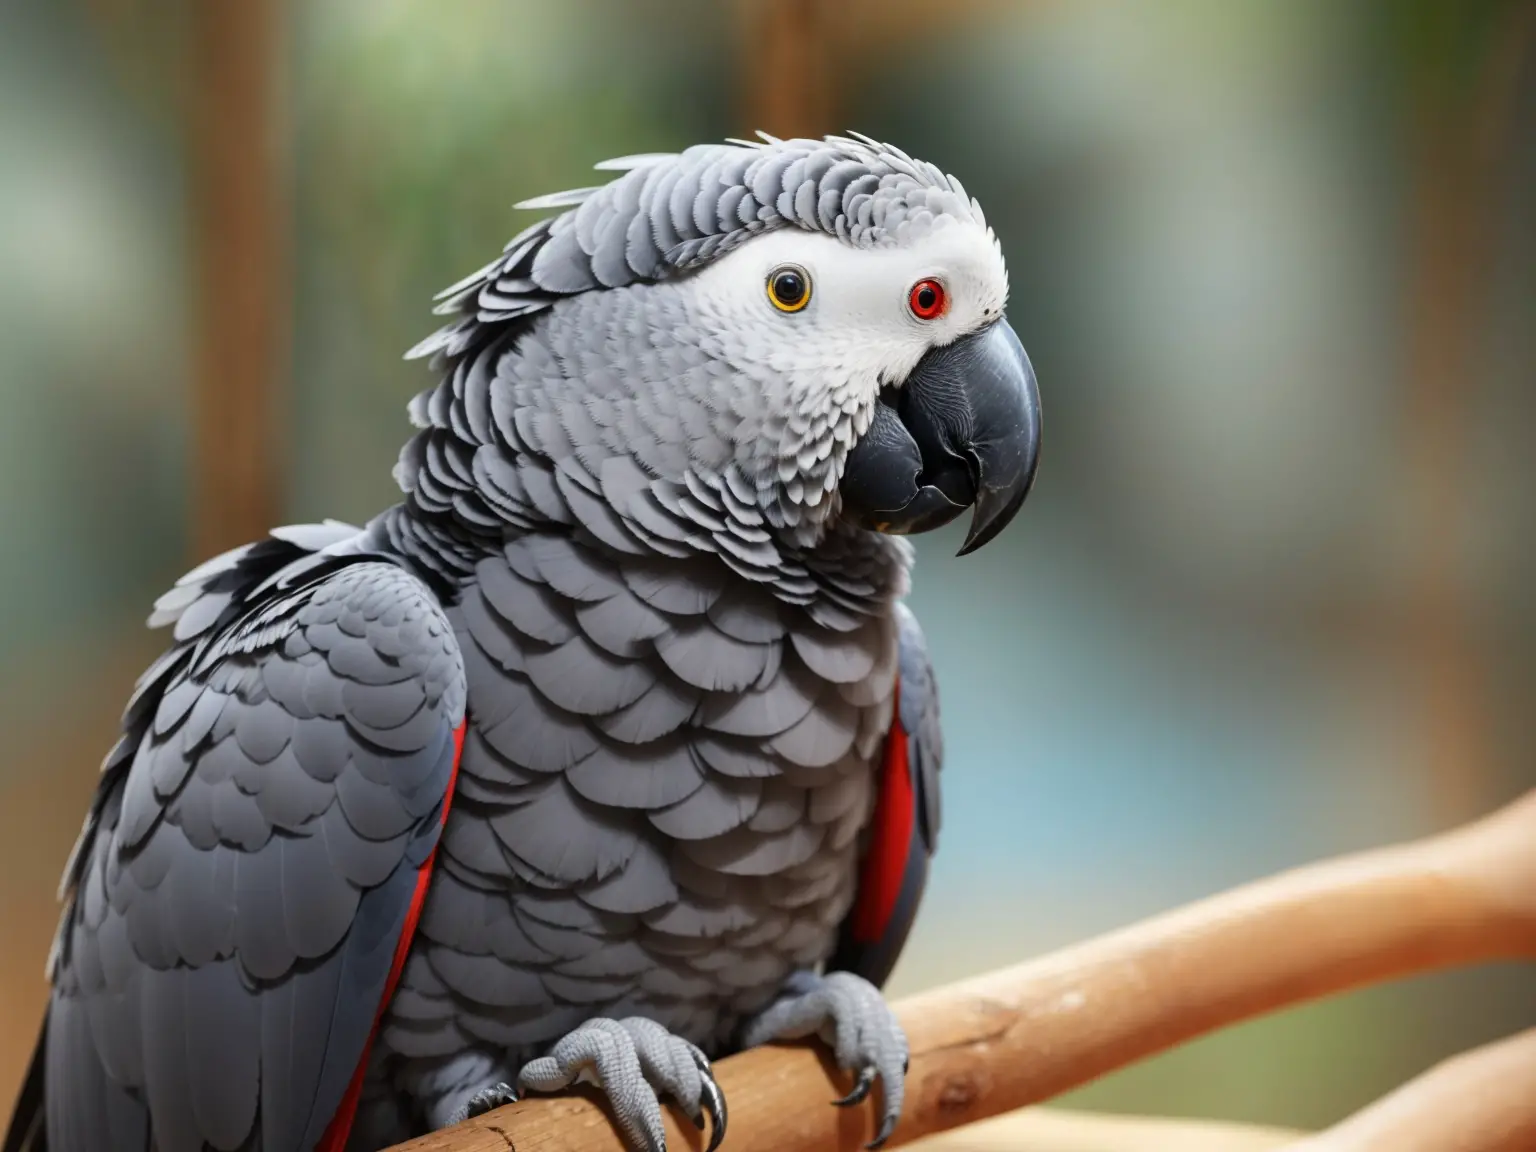 Cilantro-loving parrot.